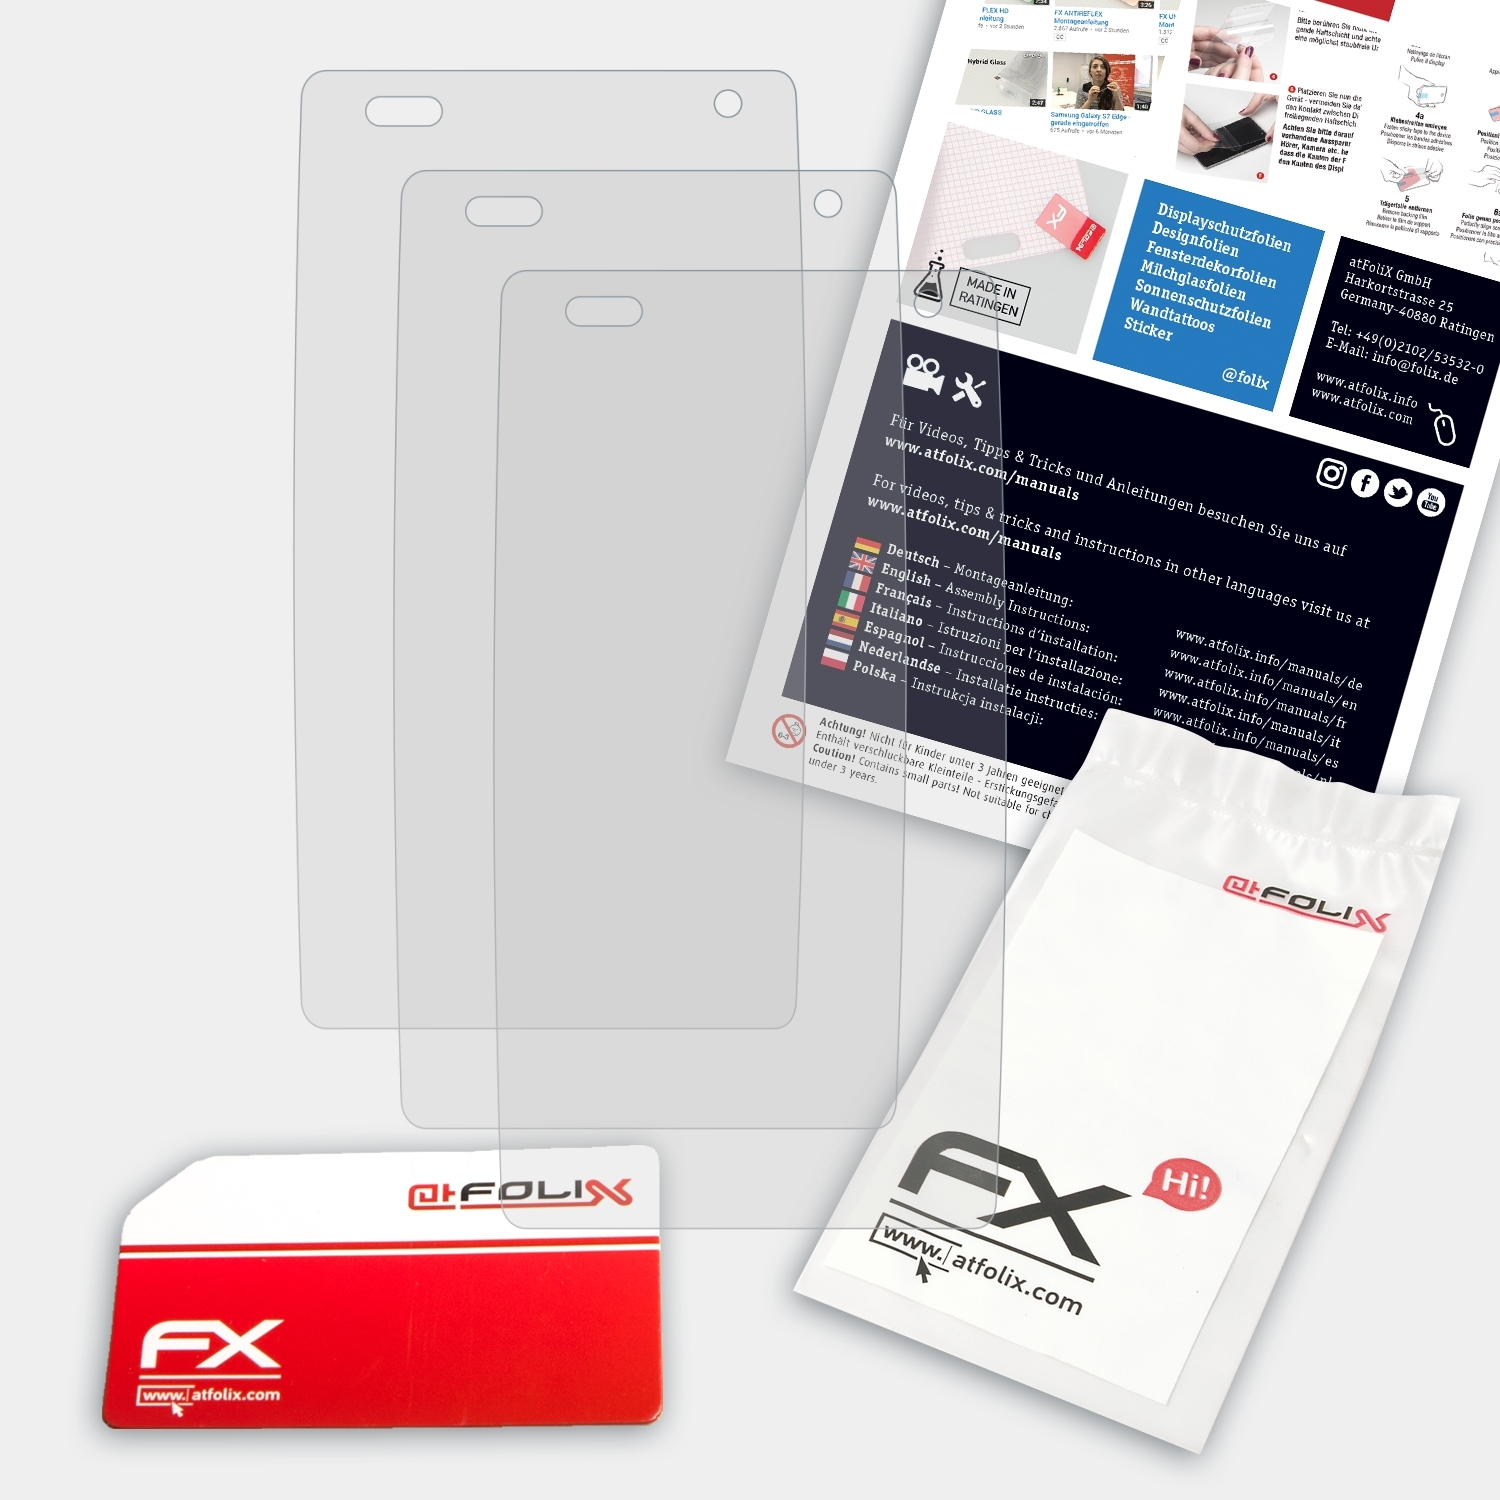 ATFOLIX 3x FX-Antireflex Displayschutz(für RugGear RG730)